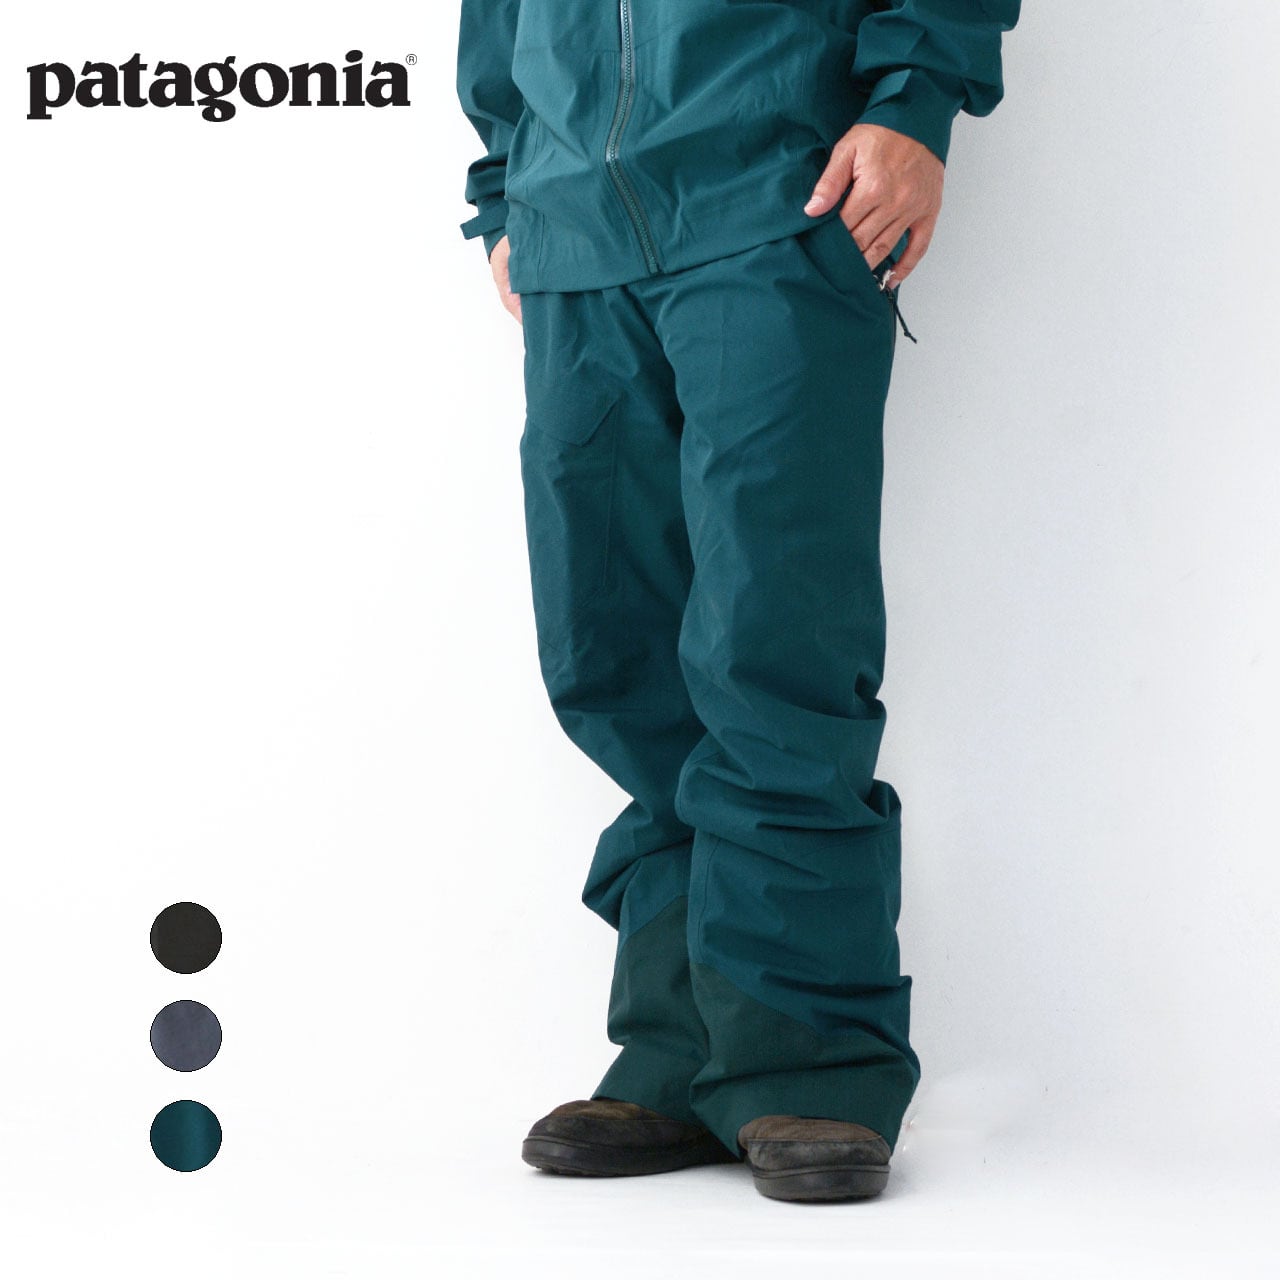 Patagonia [パタゴニア] Men's Powder Bowl Pants-Reg [31488] メンズ